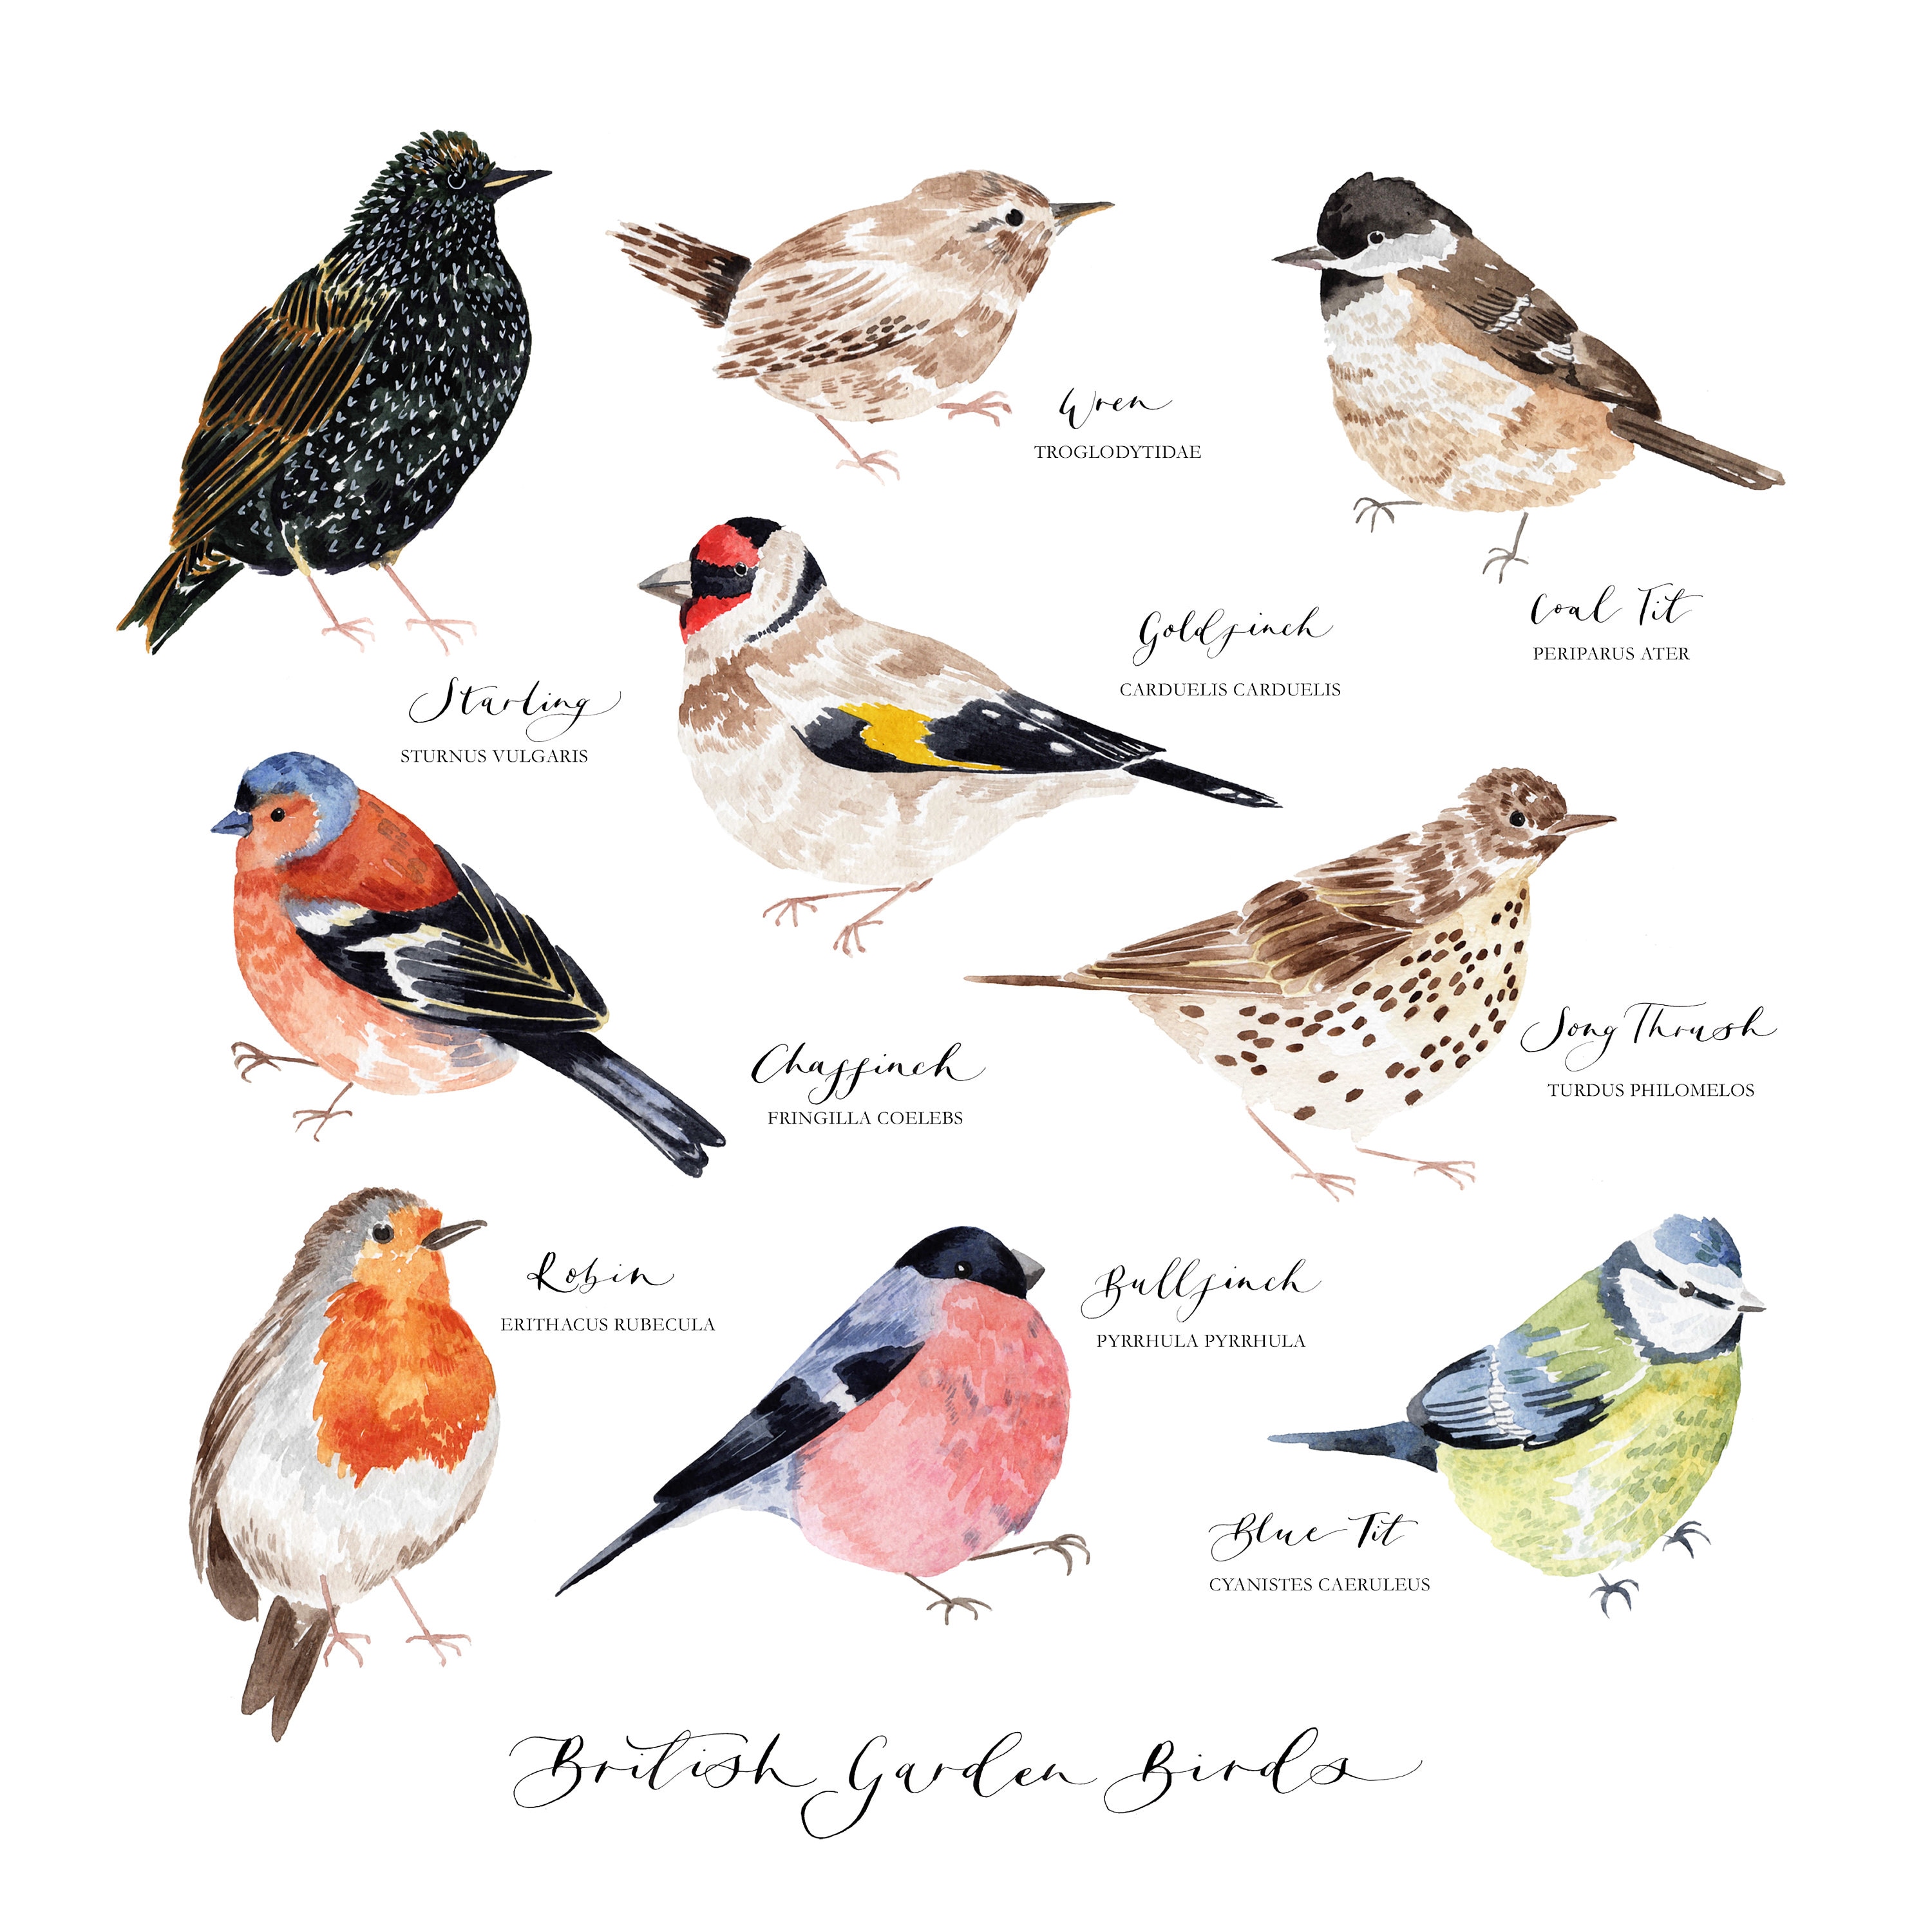 British Garden Bird Illustrated Giclée Print British Bird | Etsy